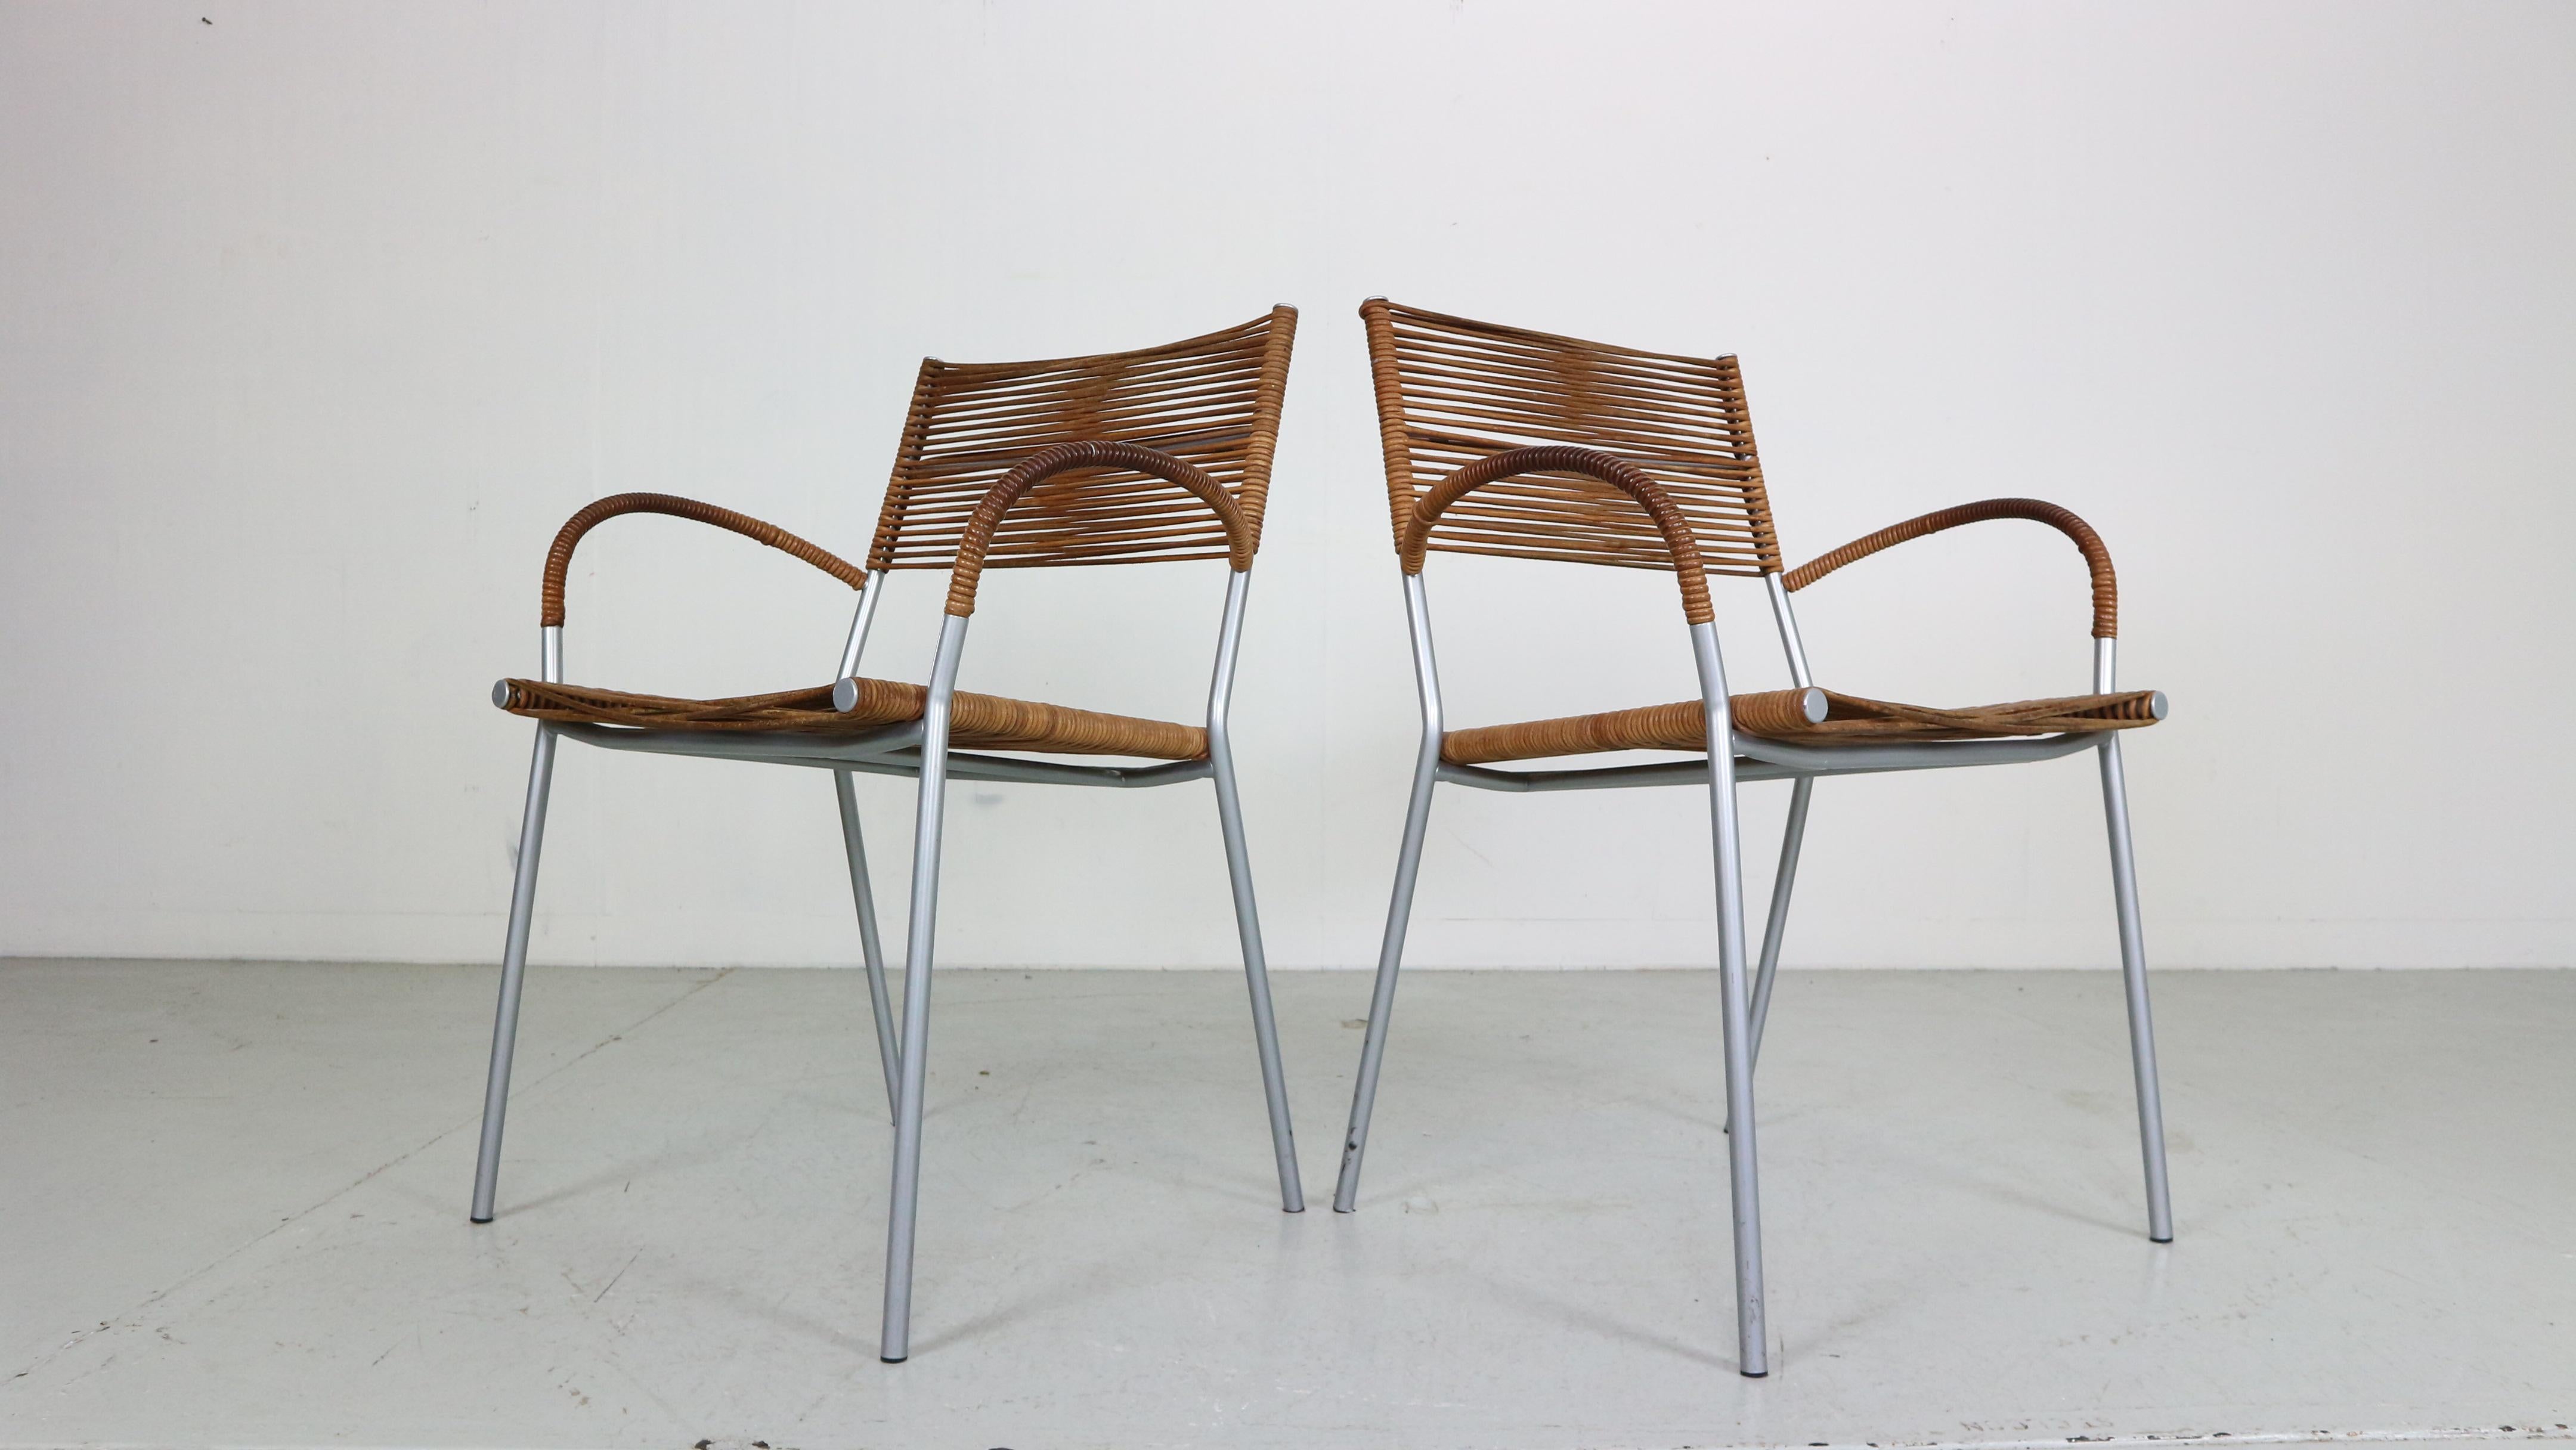 Magnifique ensemble de 2 chaises de salle à manger/chaises à bras conçu par Tito Agnoli et fabriqué par Bonacin, Italie, période 1990.
Design/One de qualité italienne intemporelle.

Numéro de modèle : Mis B2 RVS.
Marqué à l'origine.

Les chaises